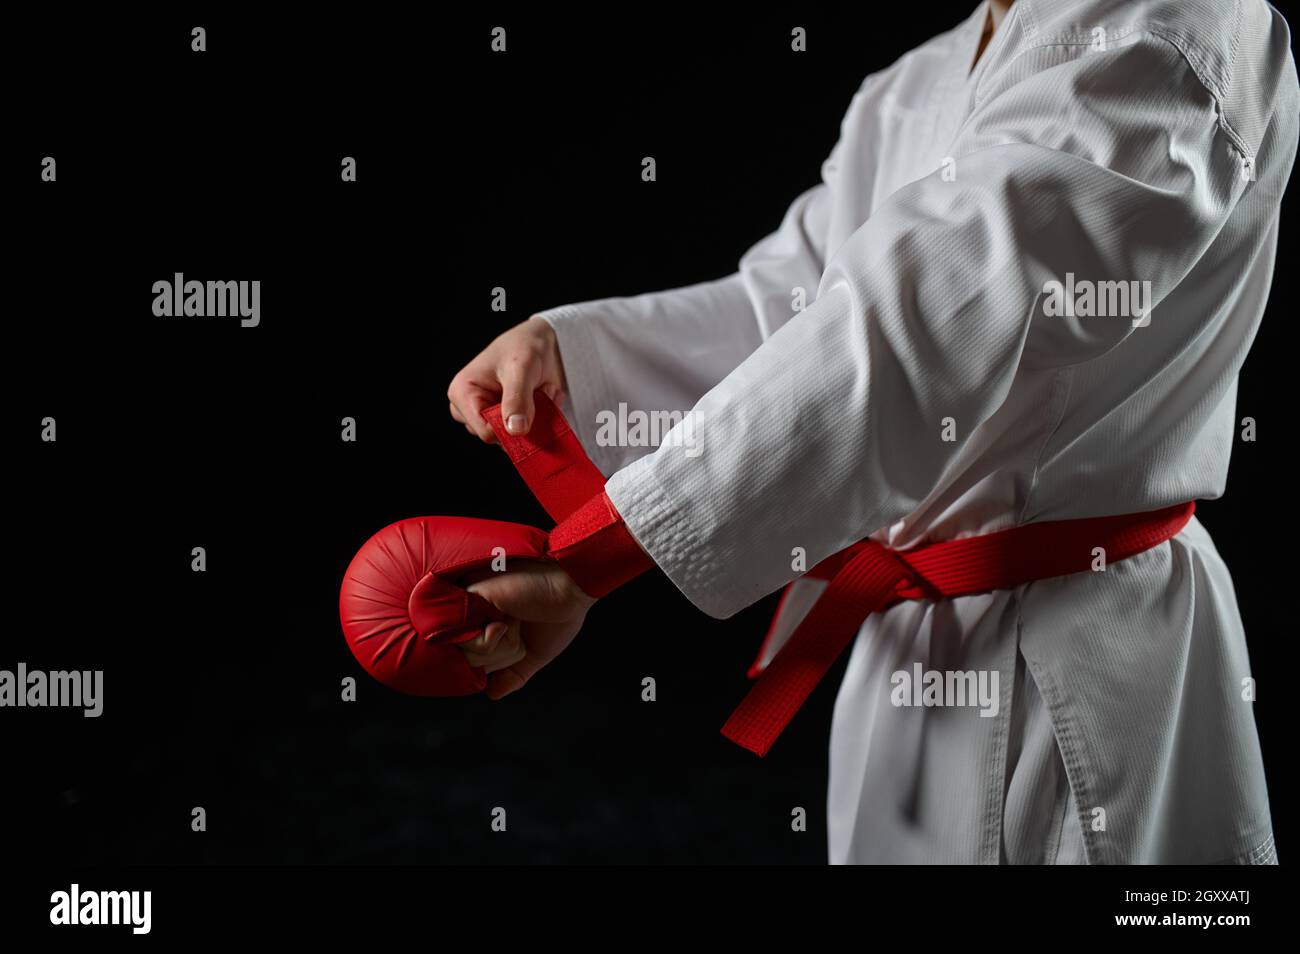 Caccia al karate maschile in kimono bianco con cintura rossa e guanti,  presa da combattimento, sfondo scuro. Carateka su allenamento, arti marziali,  allenamento prima di fig Foto stock - Alamy